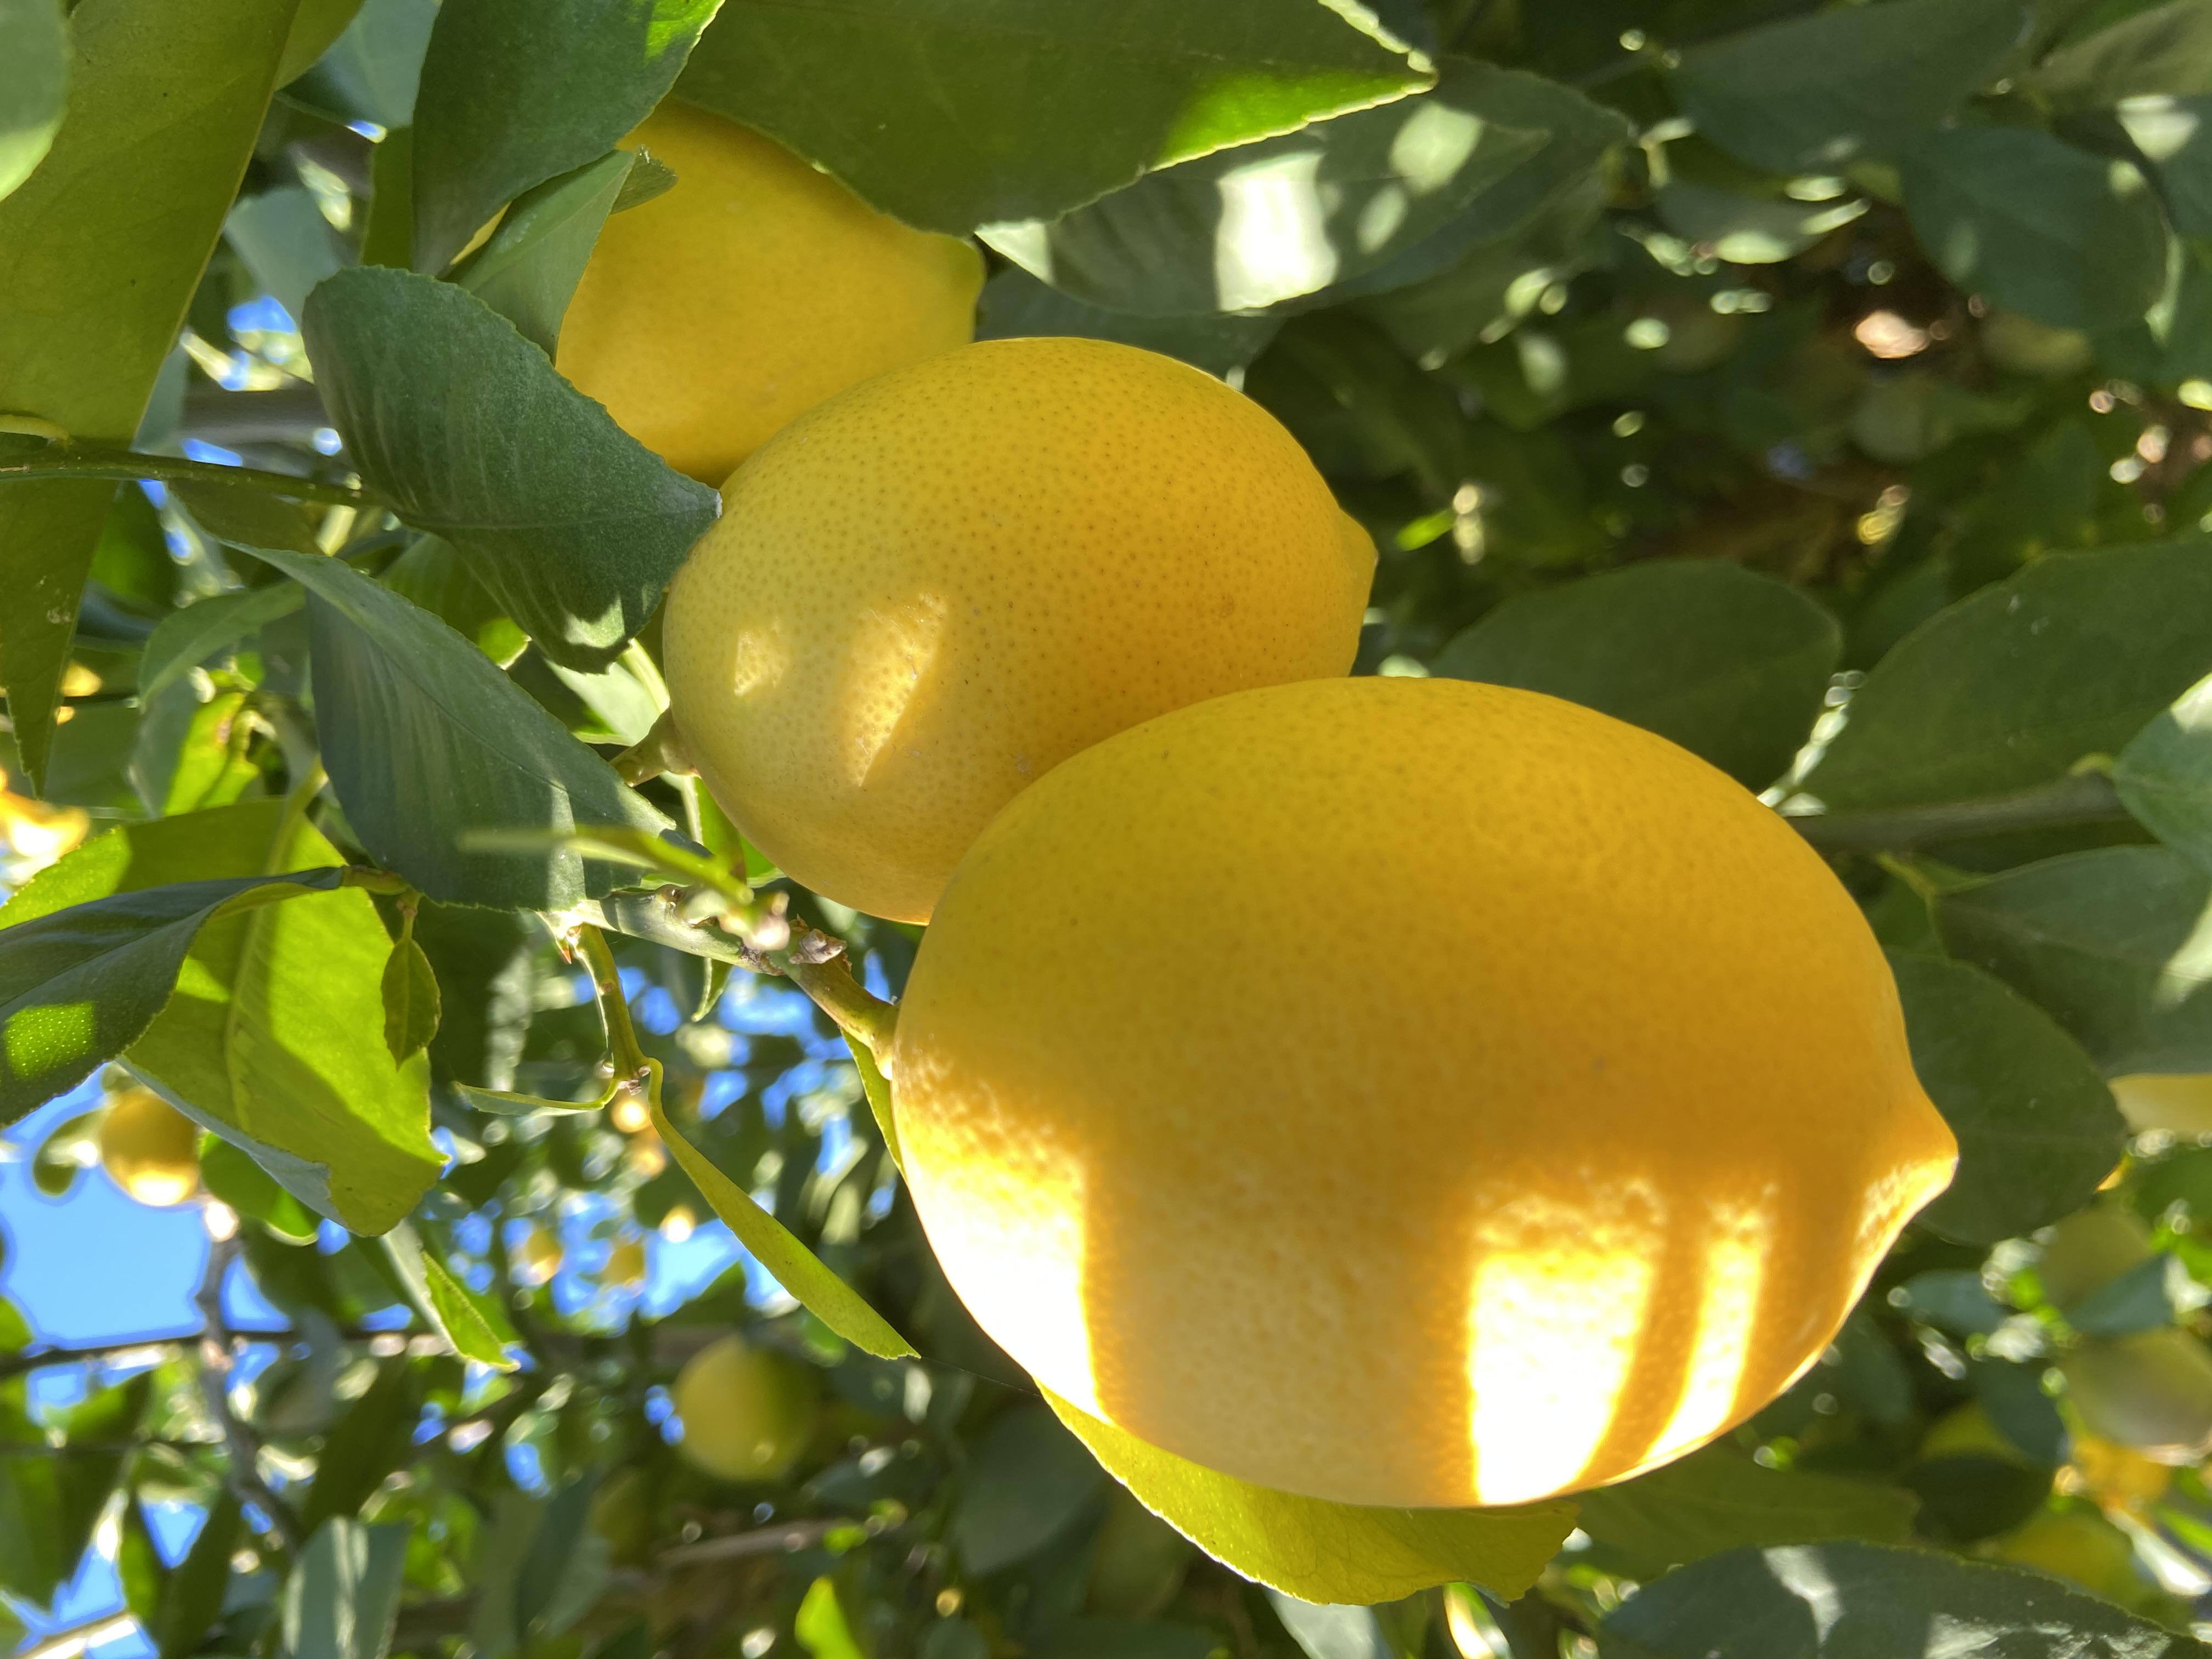 Limon - Mehmet Bayram tarafından verilen satılık limon ilanını ve diğer satılık limon ilanlarını tarimziraat.com adresinde bulabilirsiniz